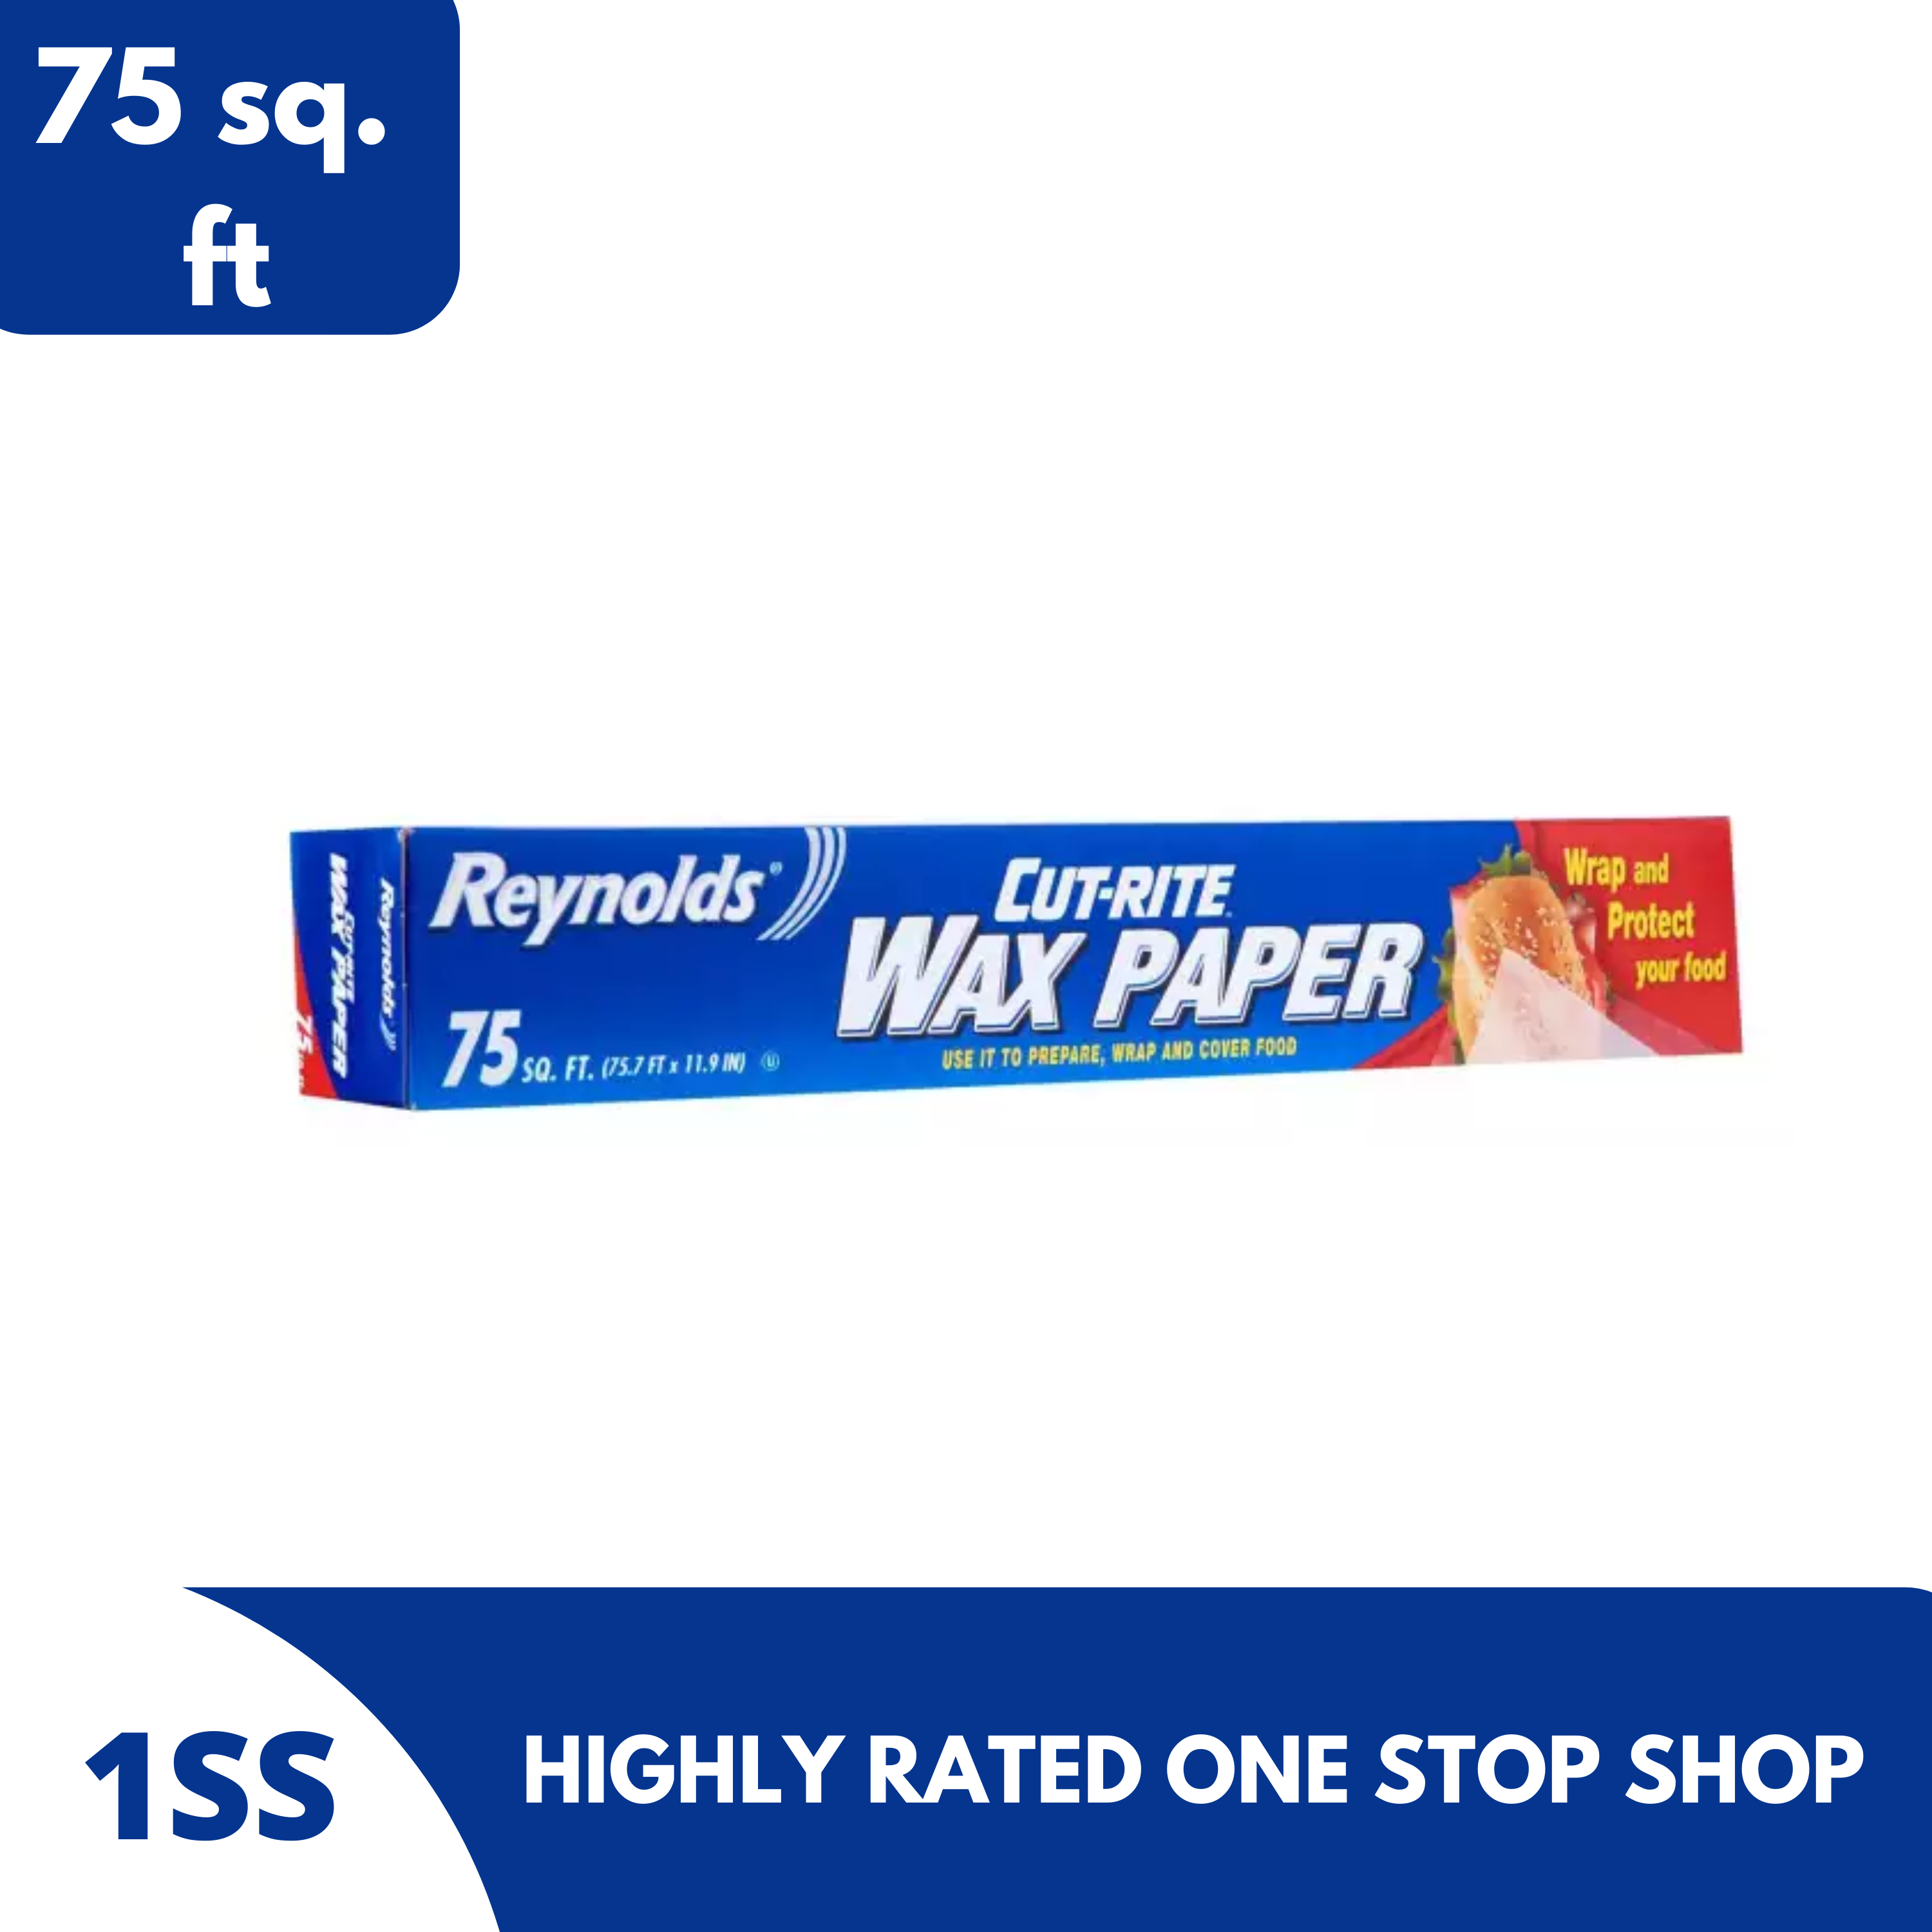 Reynolds Cut Rite Wax Paper 75sqft